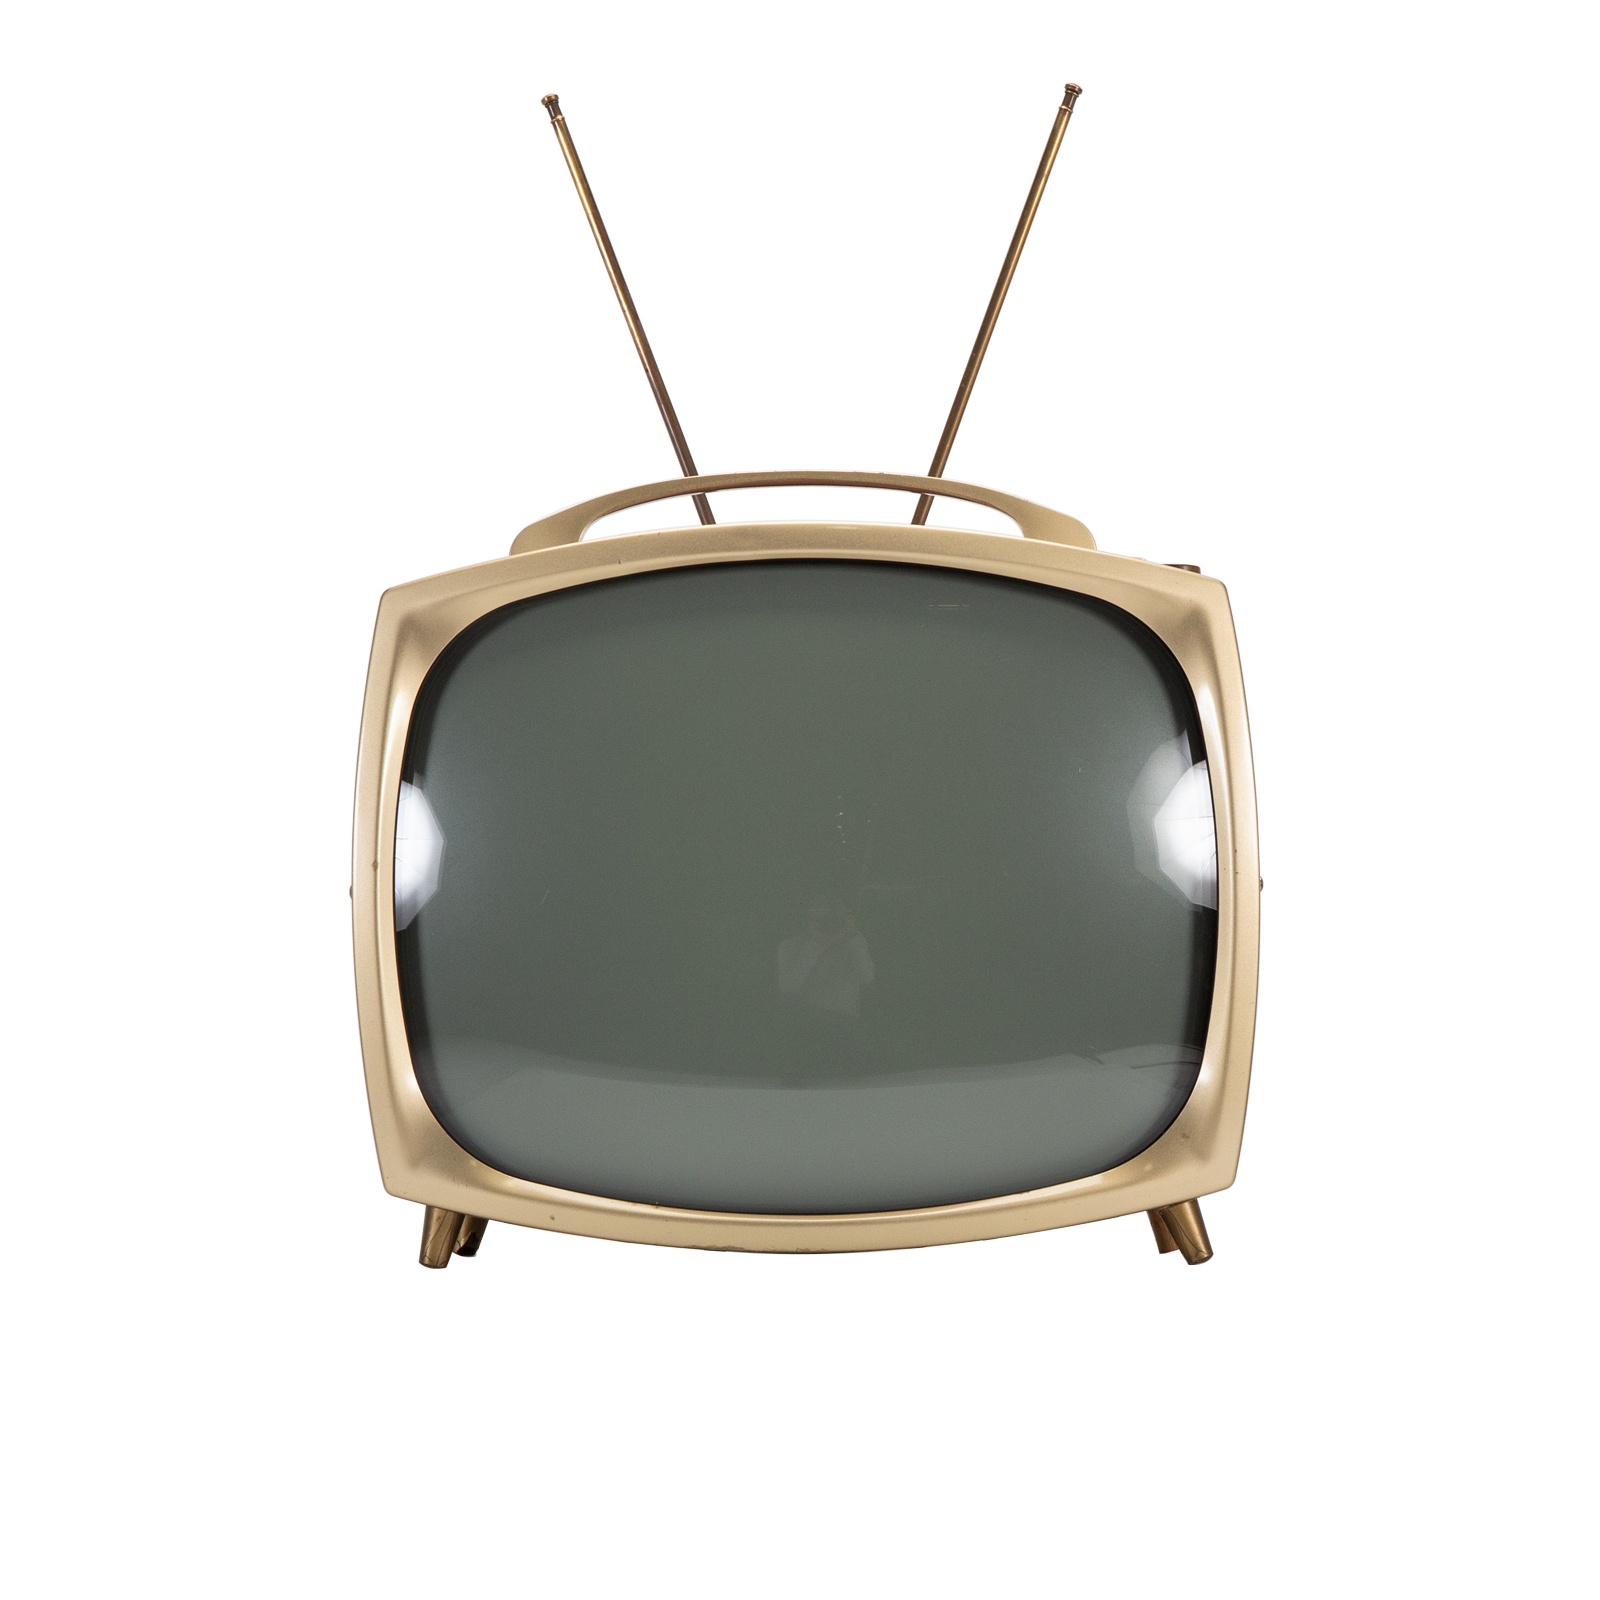 Телевизор 1950-х годов. Телевизоры 2000-х годов. Portable TV Set. Bn880 антенной вверх. Телевизор сборе купить